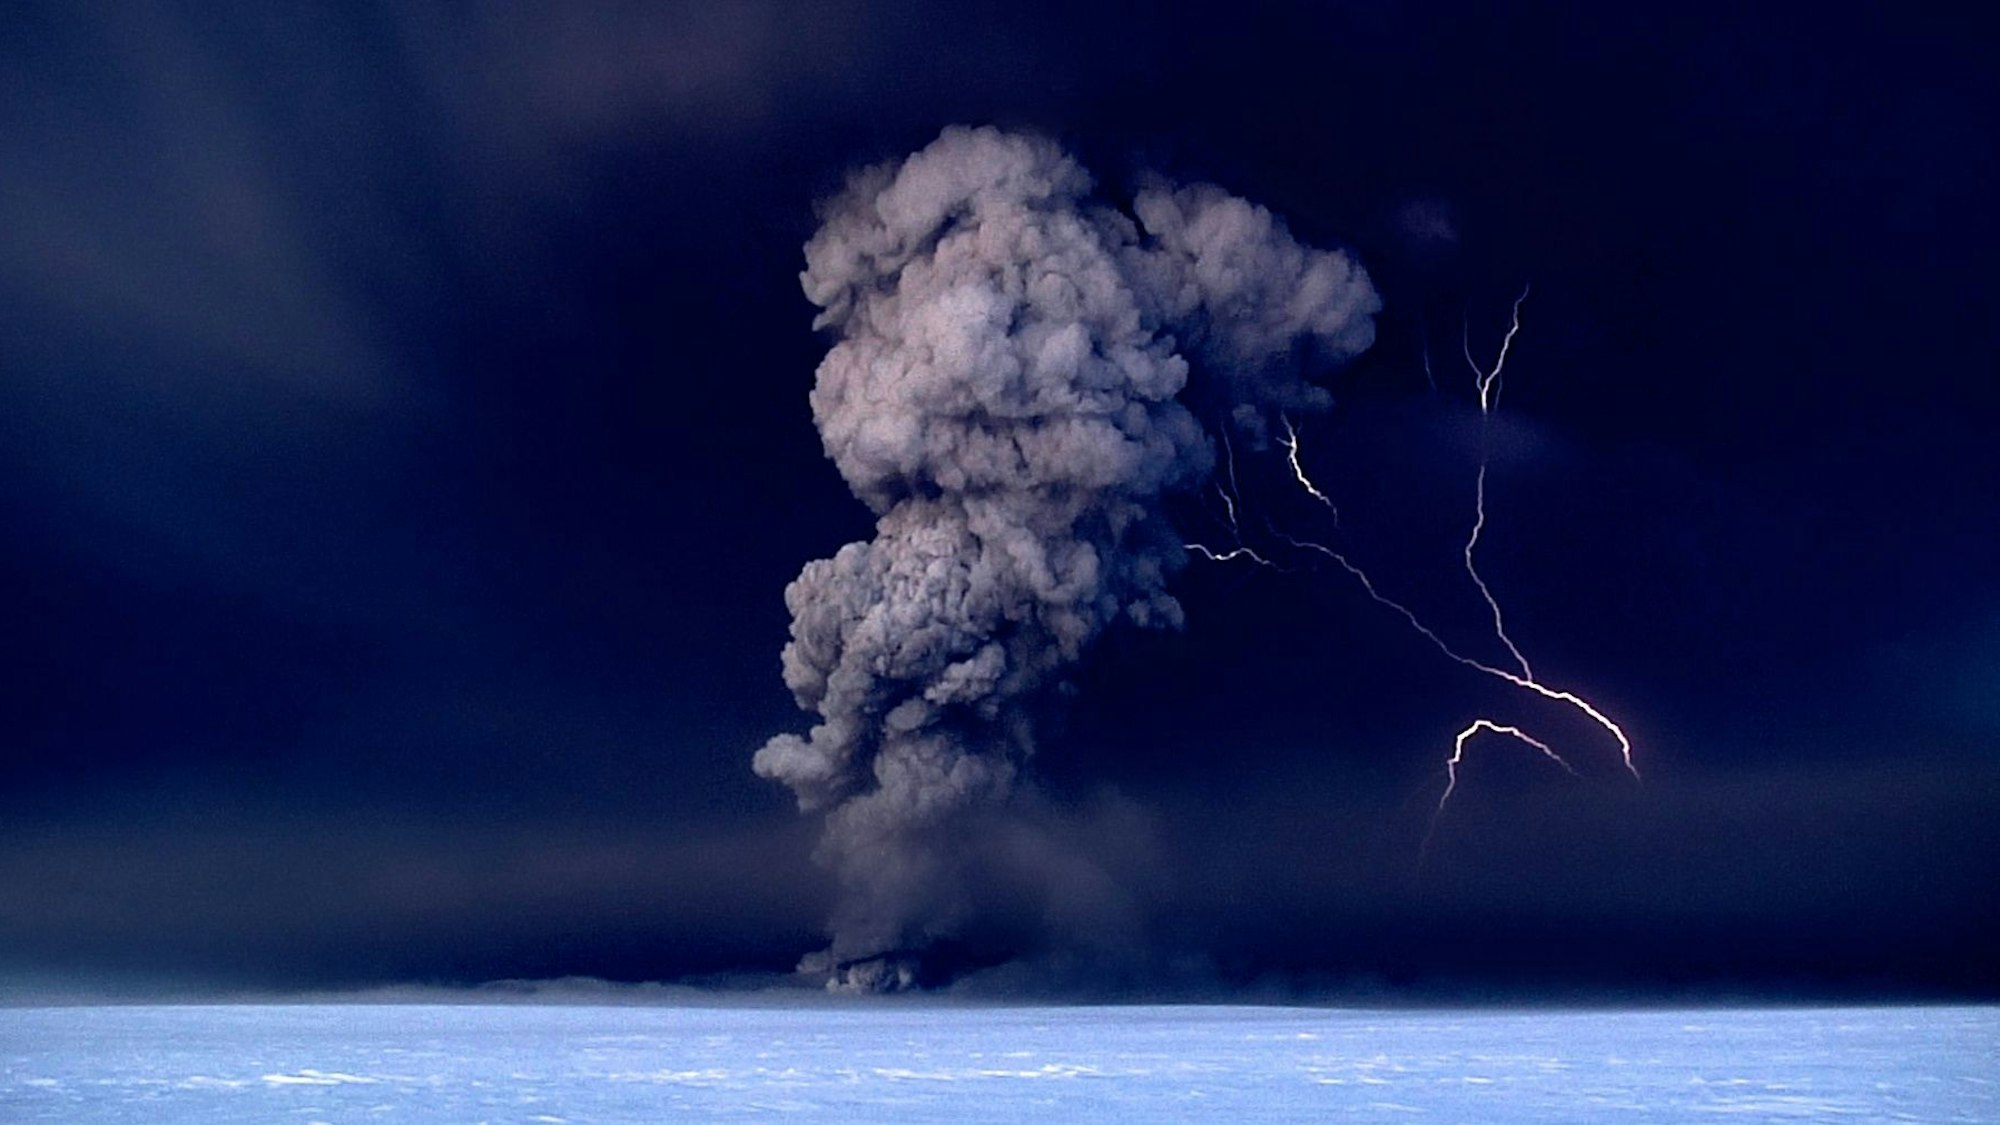 Bei einem Ausbruch des Vulkans Grímsvötn auf Island steigt eine kilometerhohe Aschesäule in den Himmel. Nach der Eruption bilden sich in einem Unwetter große Blitze. (Archivbild)